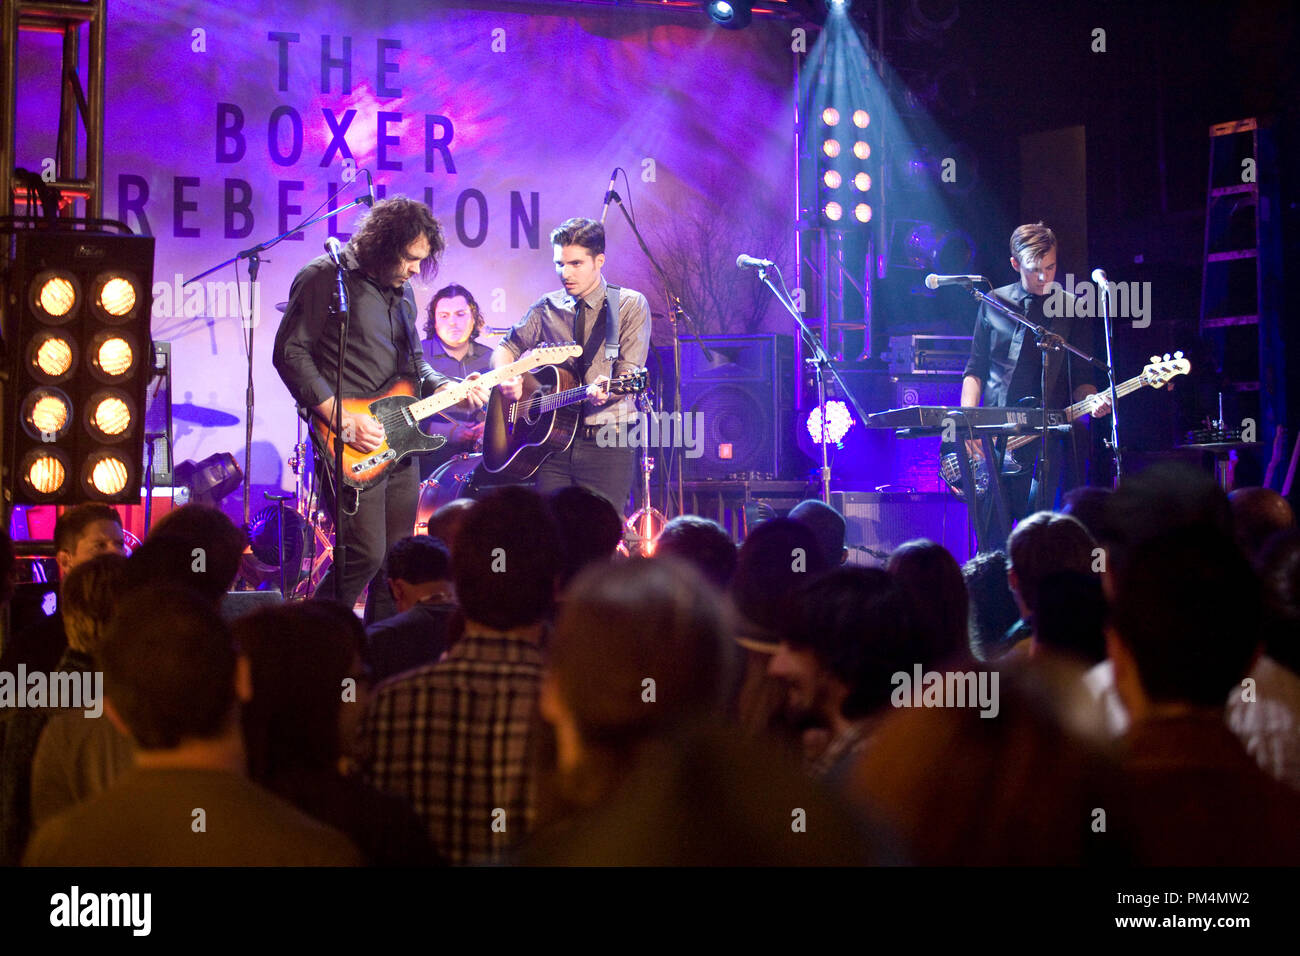 Eine Szene mit der Band THE BOXER REBELLION von romantischen von New Line Cinema Komödie "DER ABSTAND", ein Warner Bros.-Bilder freigeben. Stockfoto